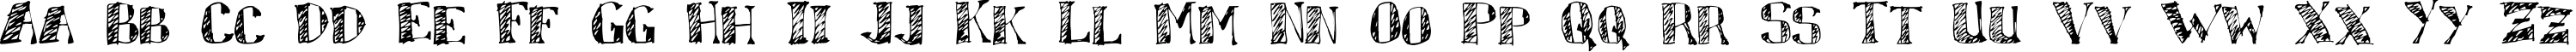 Пример написания английского алфавита шрифтом Sketchy